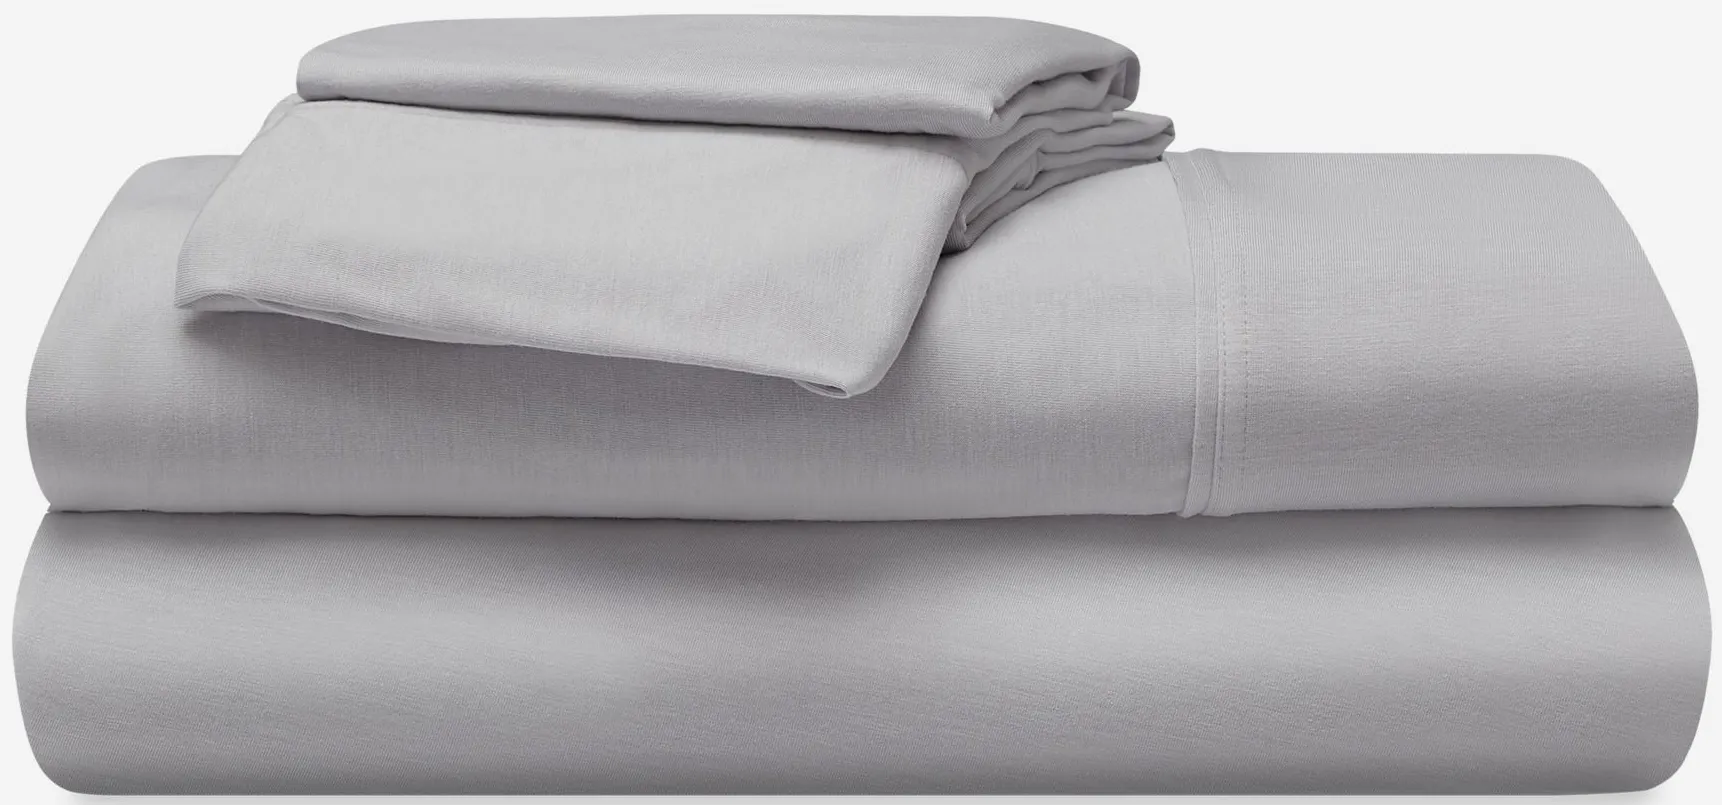 BEDGEAR Hyper-Wool Sheet Set in Light Grey by Bedgear